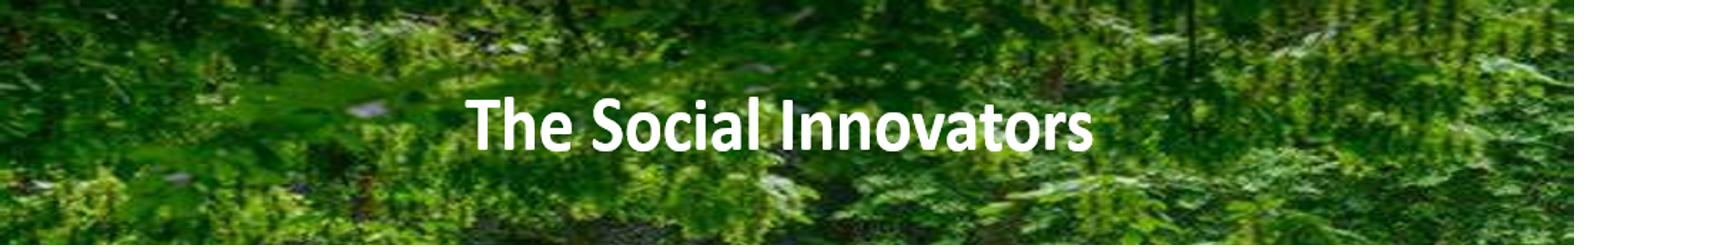 Social Innovator Banner